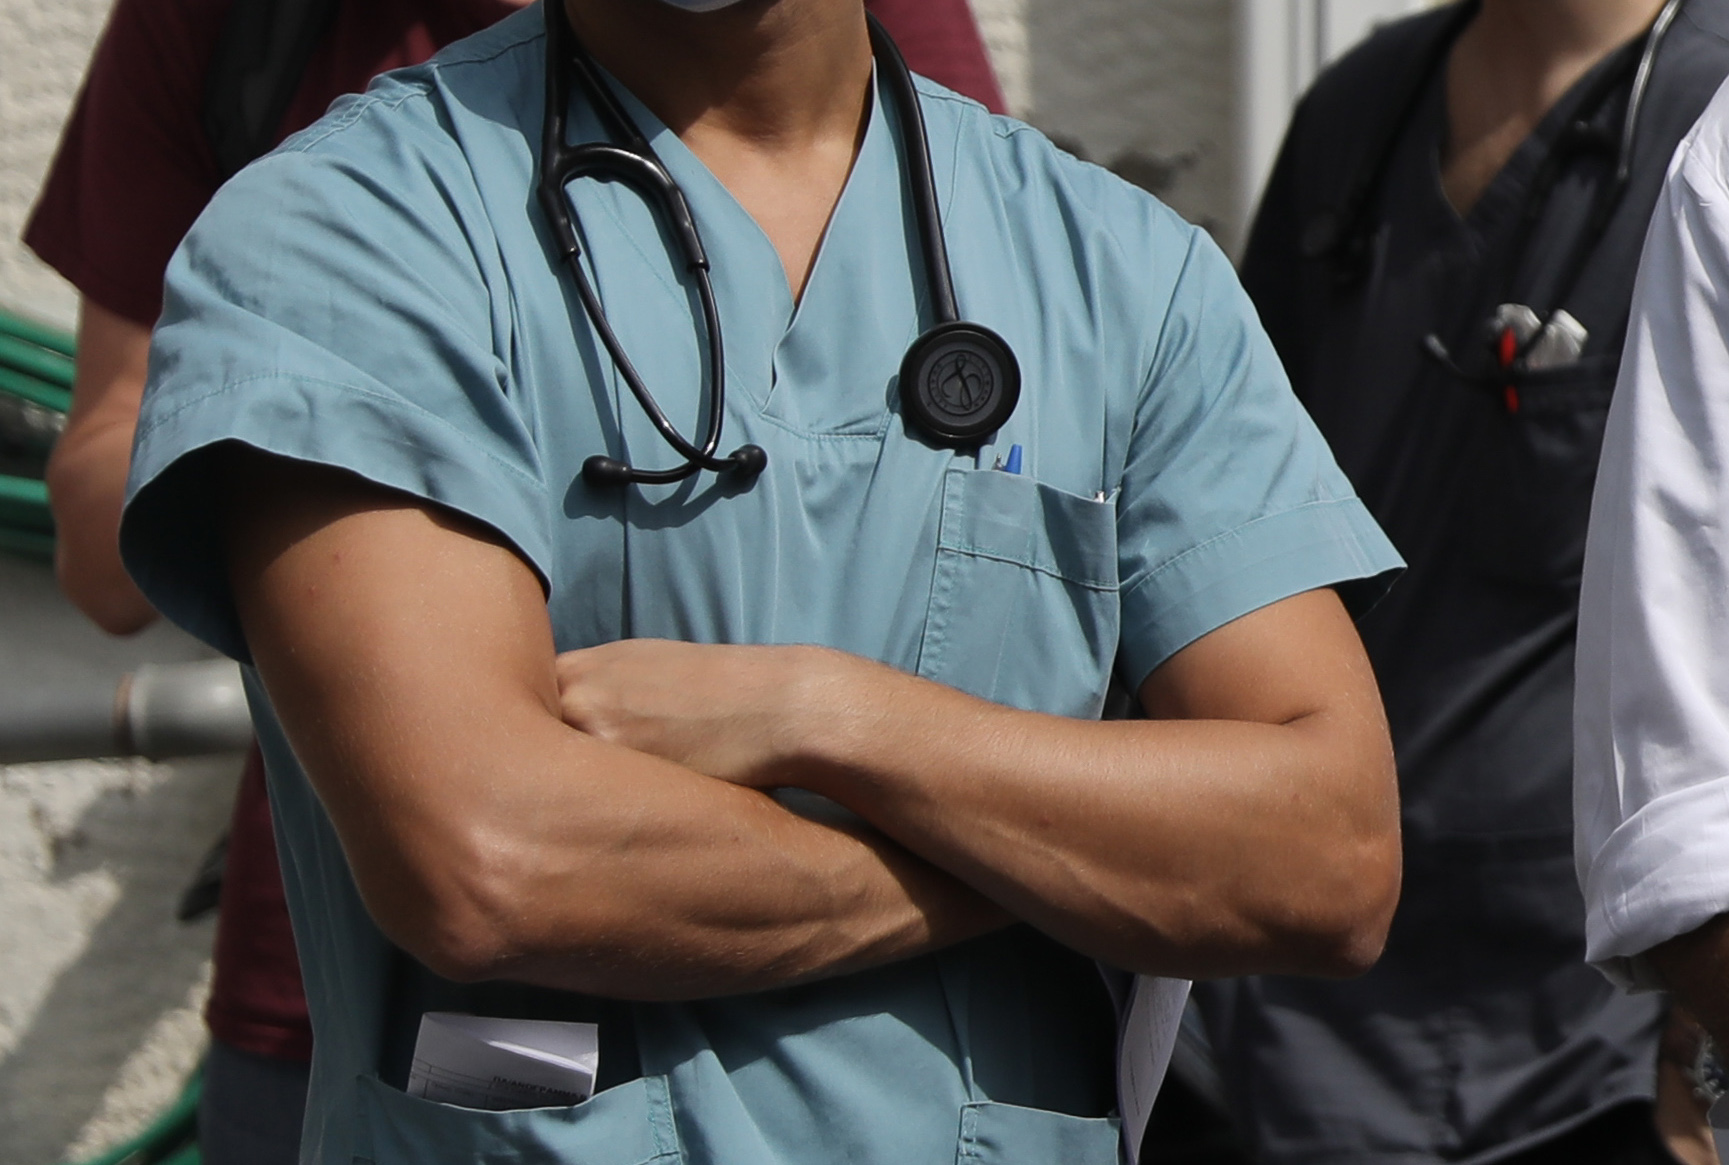 Προσωπικός γιατρός: Η διαδικασία εγγραφής στο ehealth.gov.gr και ποιοι μπορεί να είναι προσωπικοί ιατροί